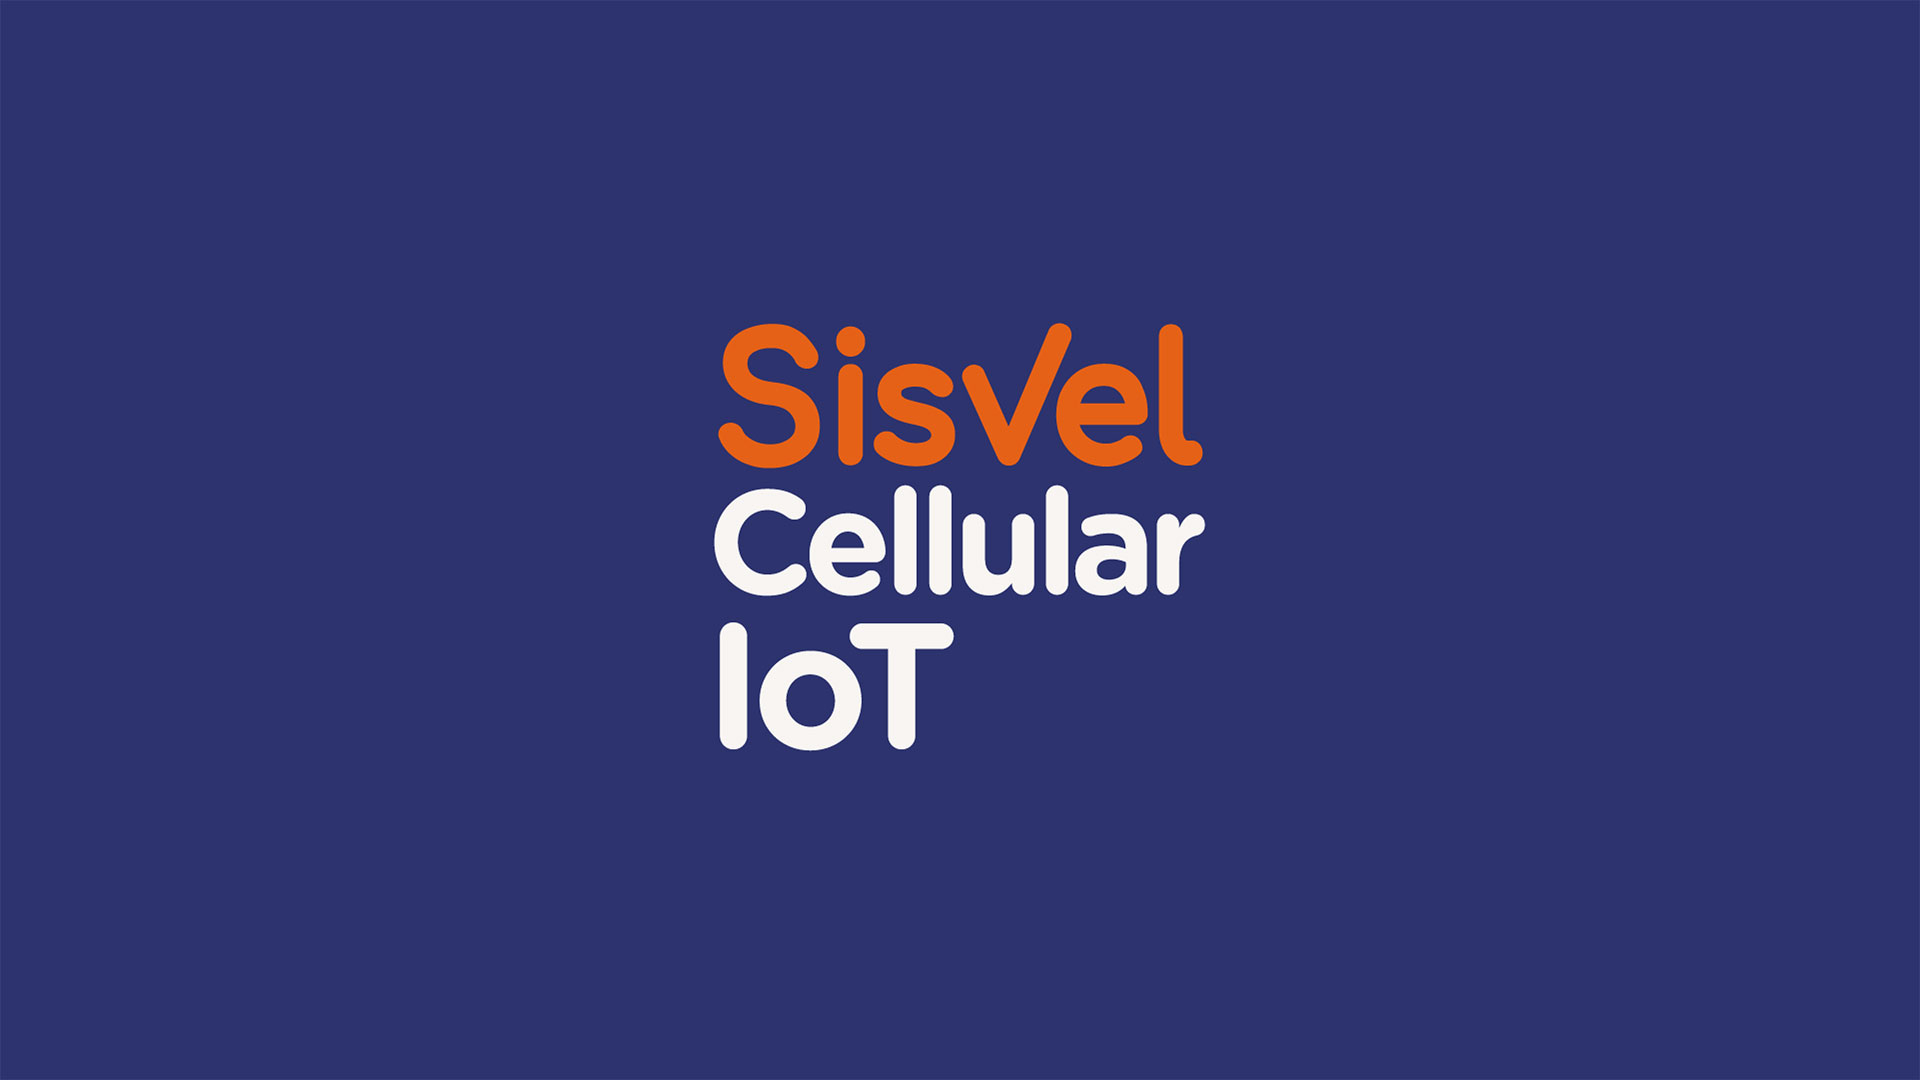 シズベルがセルラーIoTデバイスメーカー向けに特許に関する広報キャンペーンを実施